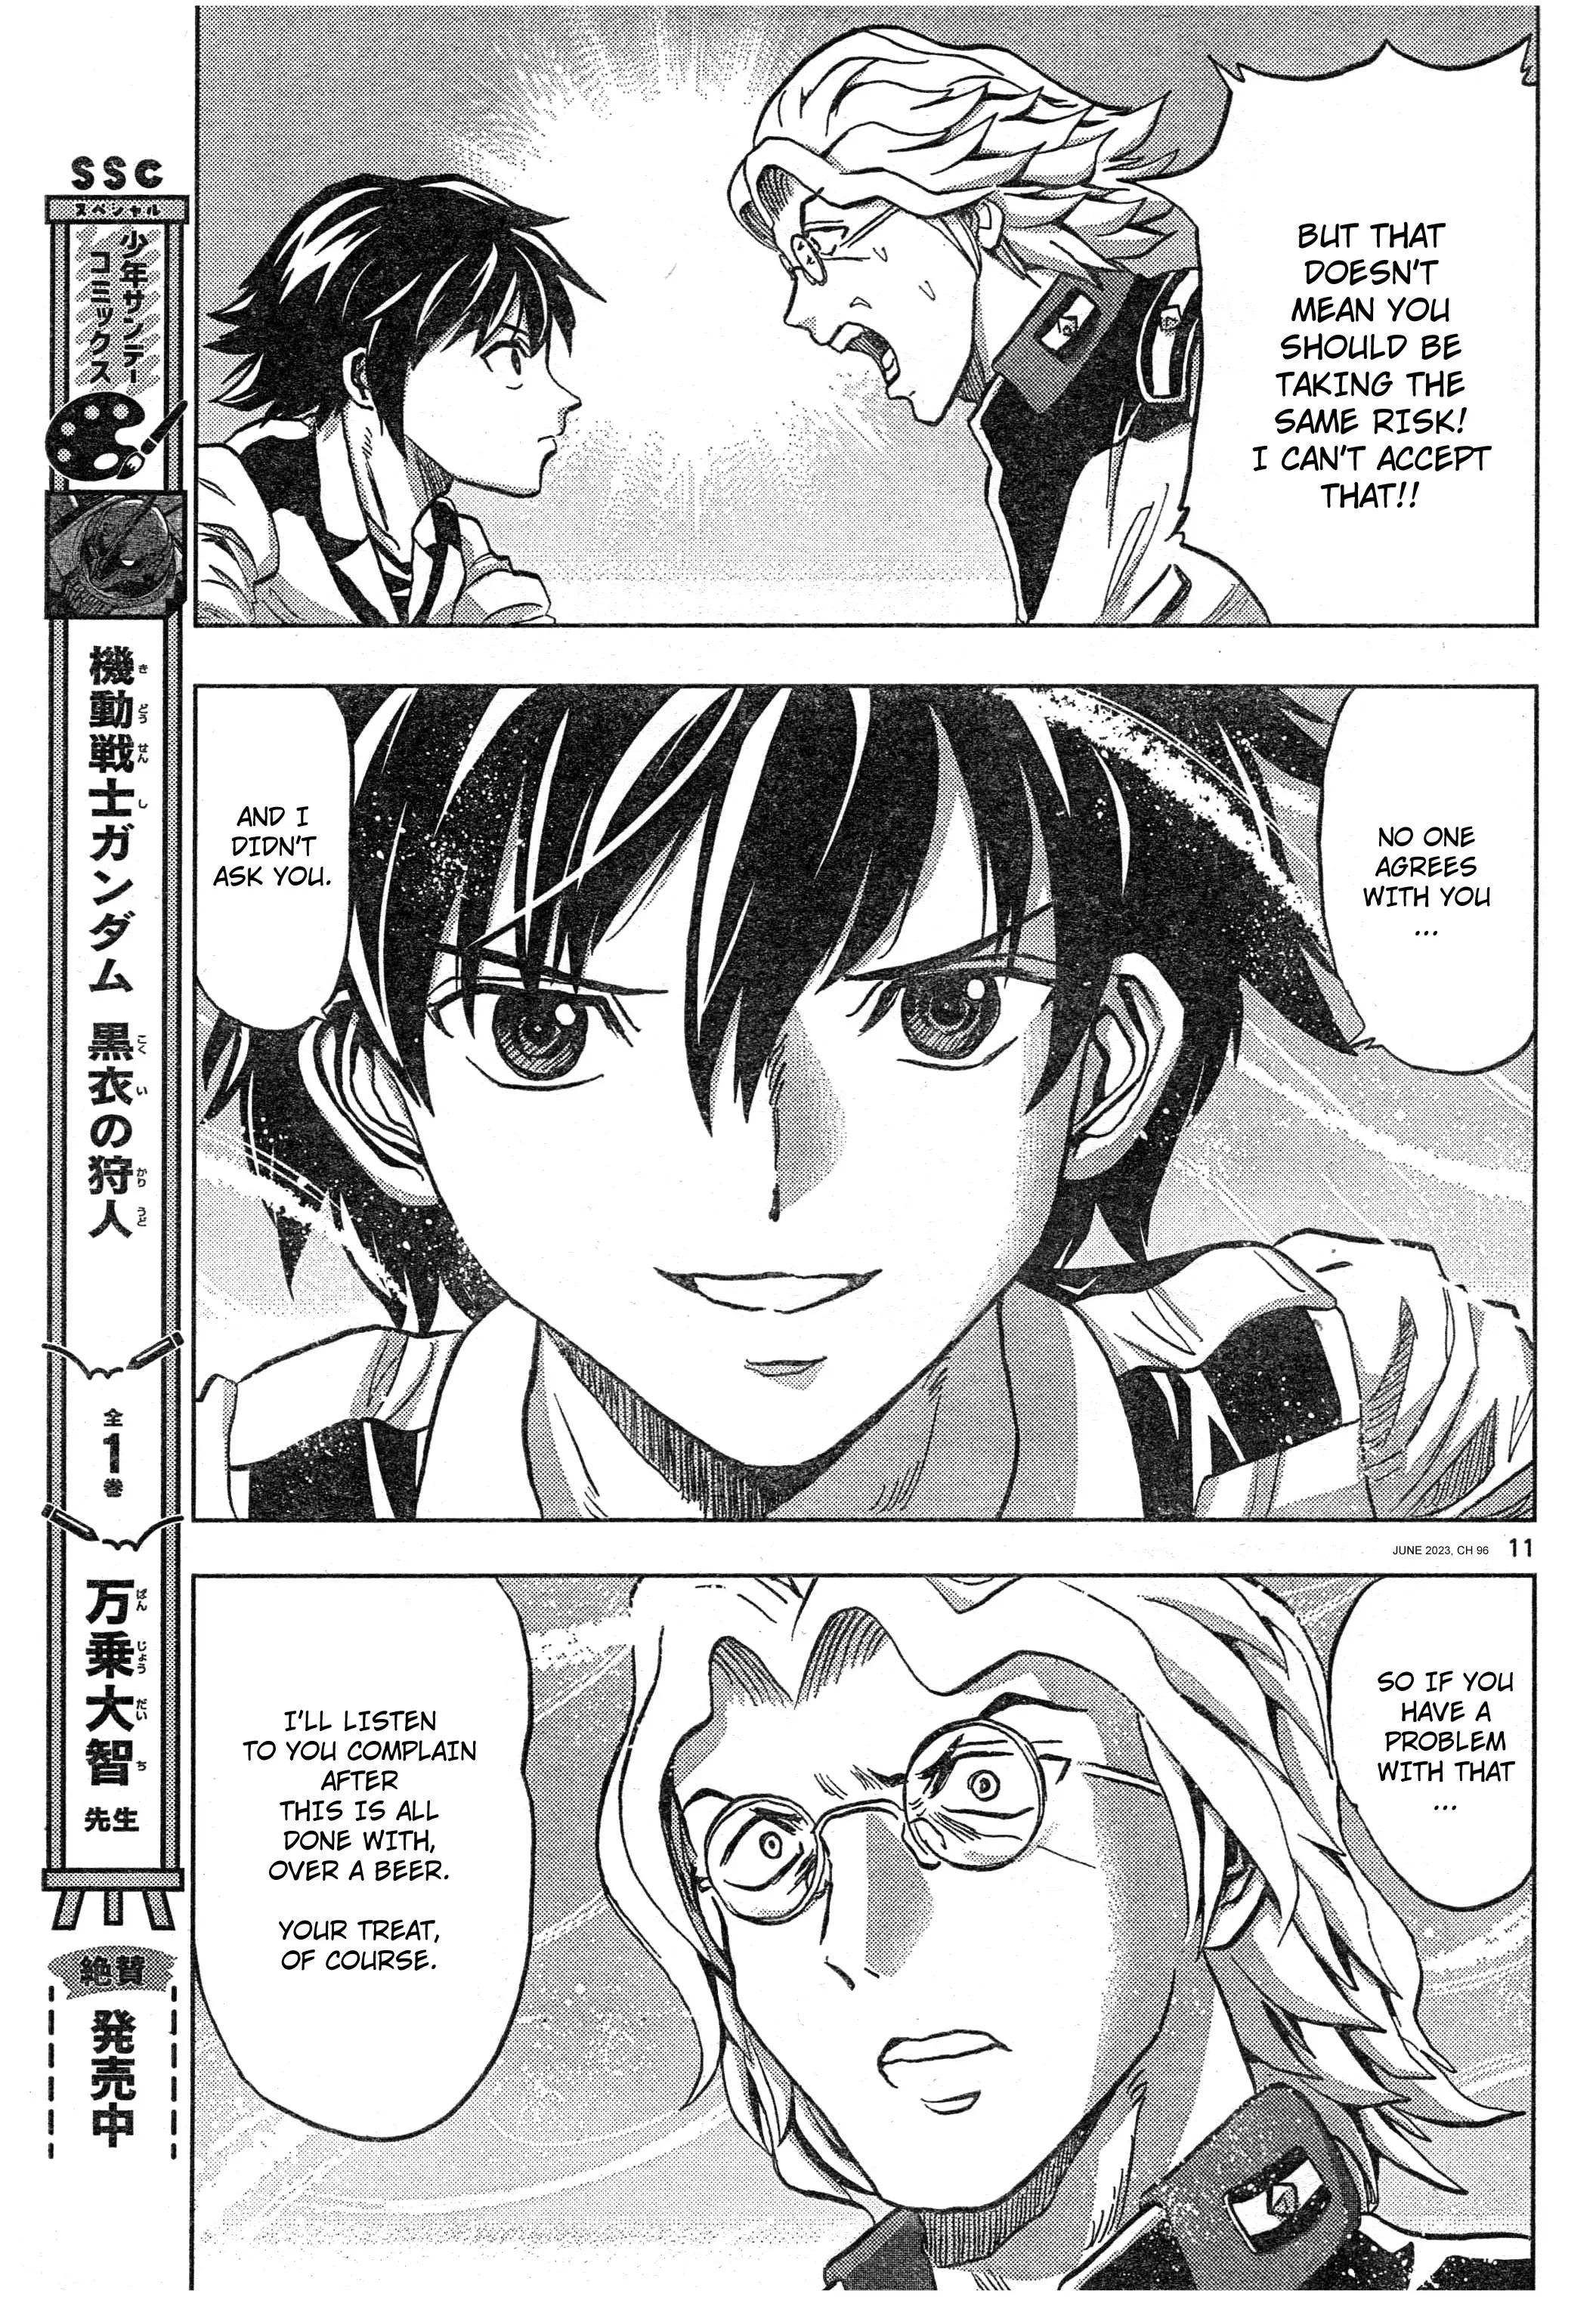 Mobile Suit Gundam Aggressor - 96 page 11-80de327d